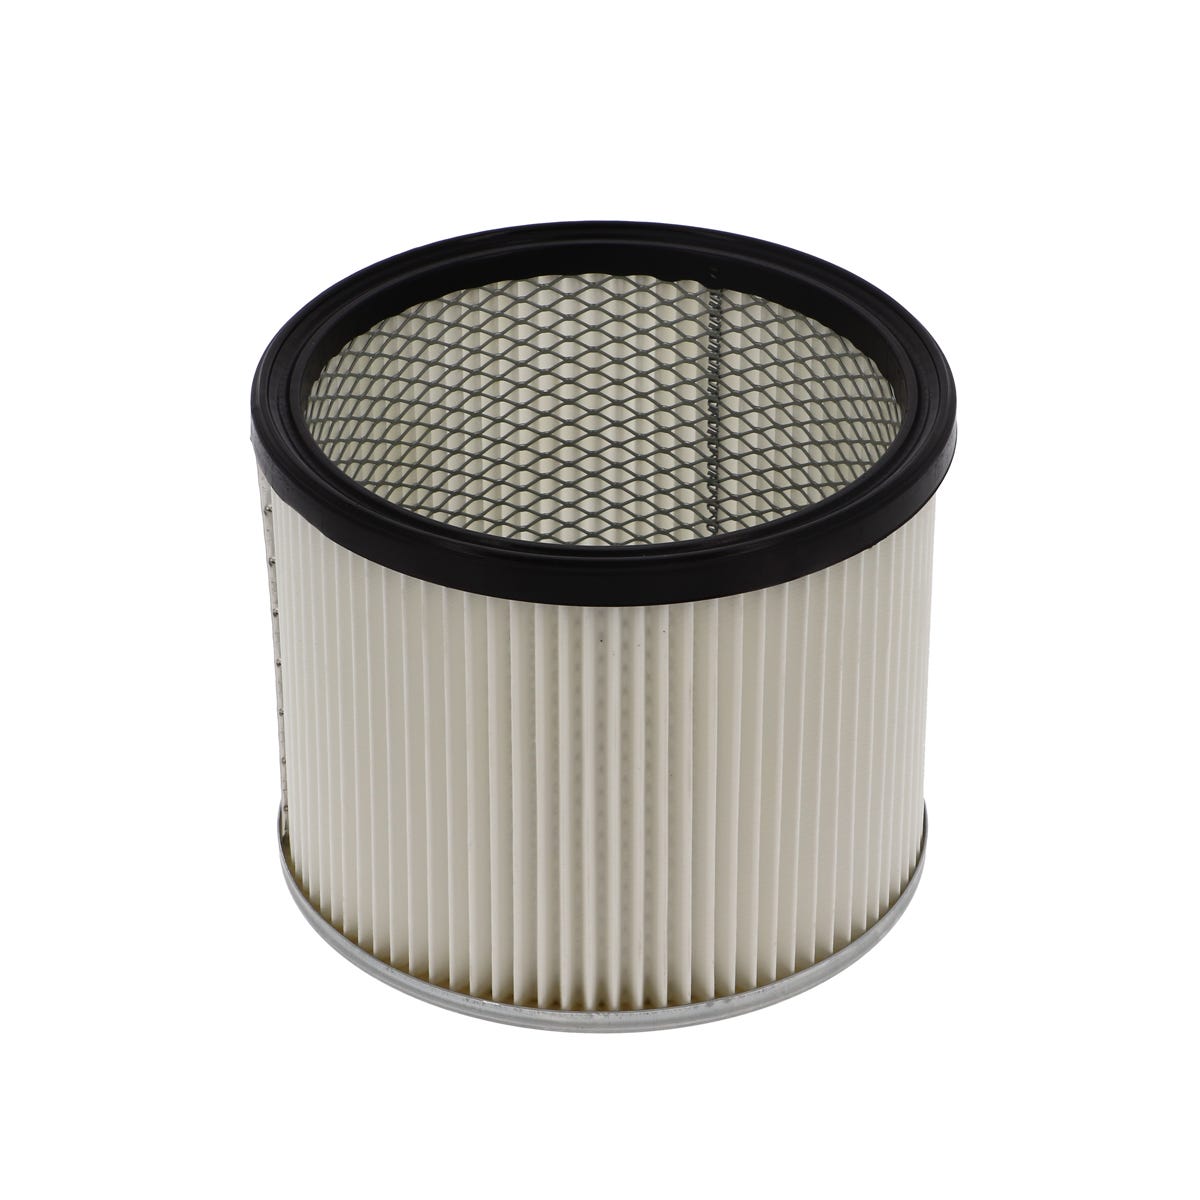 Filtre cartouche HEPA pour aspirateurs RENSON compatible avec modèle I301 0